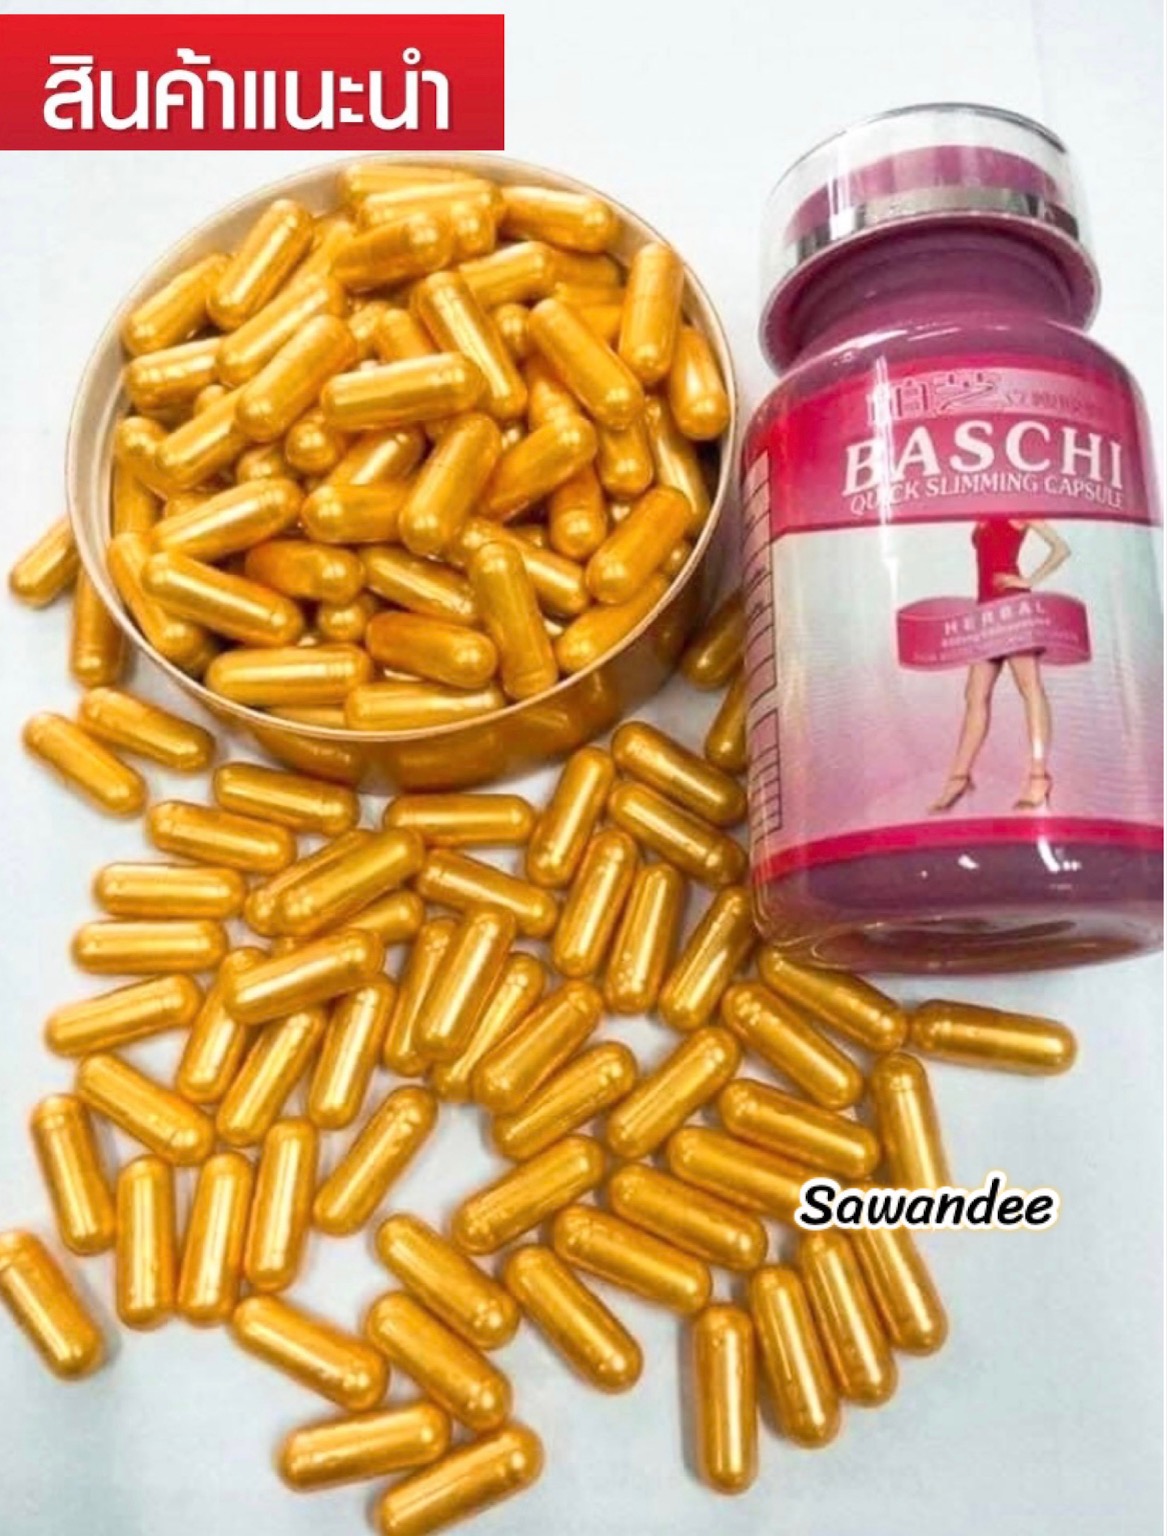 💋บาชิ Baschi Slimming บาชิทอง ลดน้ำหนัก สูตรเดิม มี 40เม็ด ของแท้แน่นอน ✅มีเก็บเงินปลายทาง💋